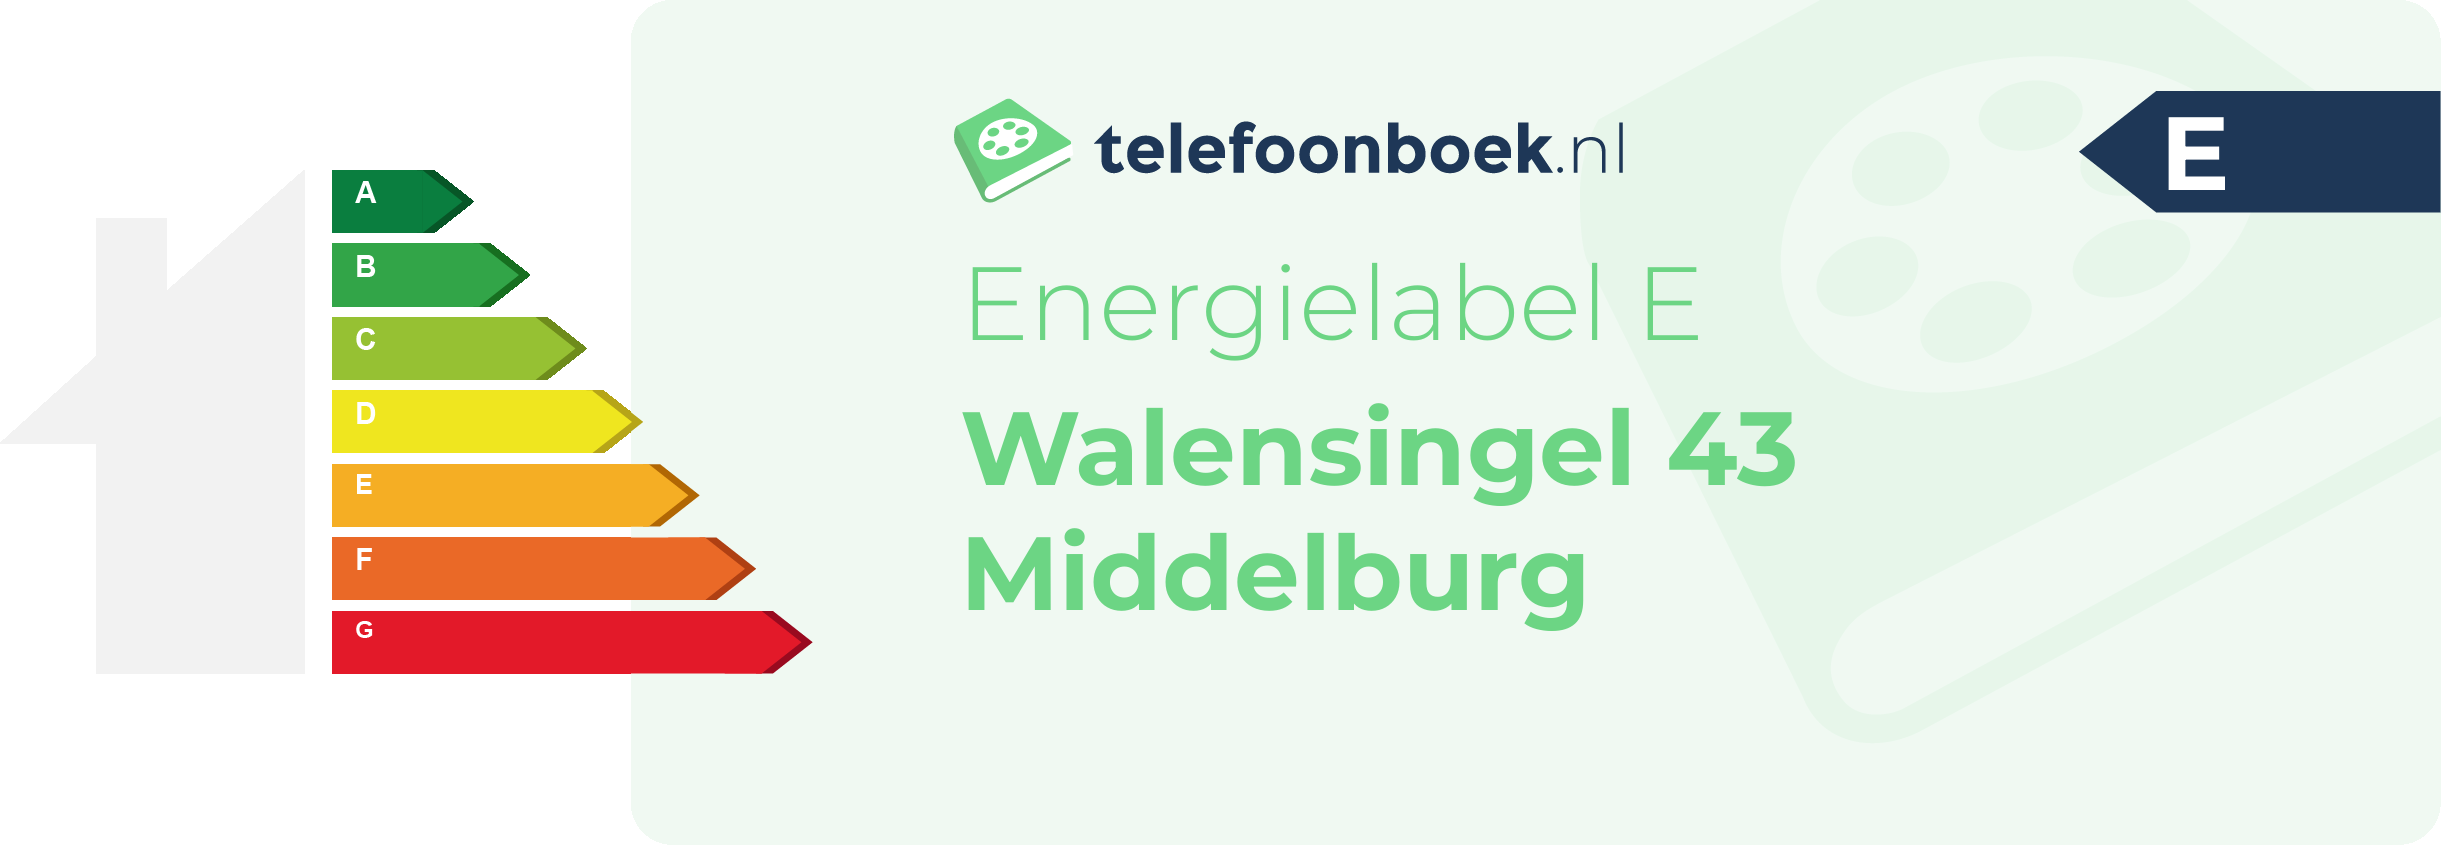 Energielabel Walensingel 43 Middelburg